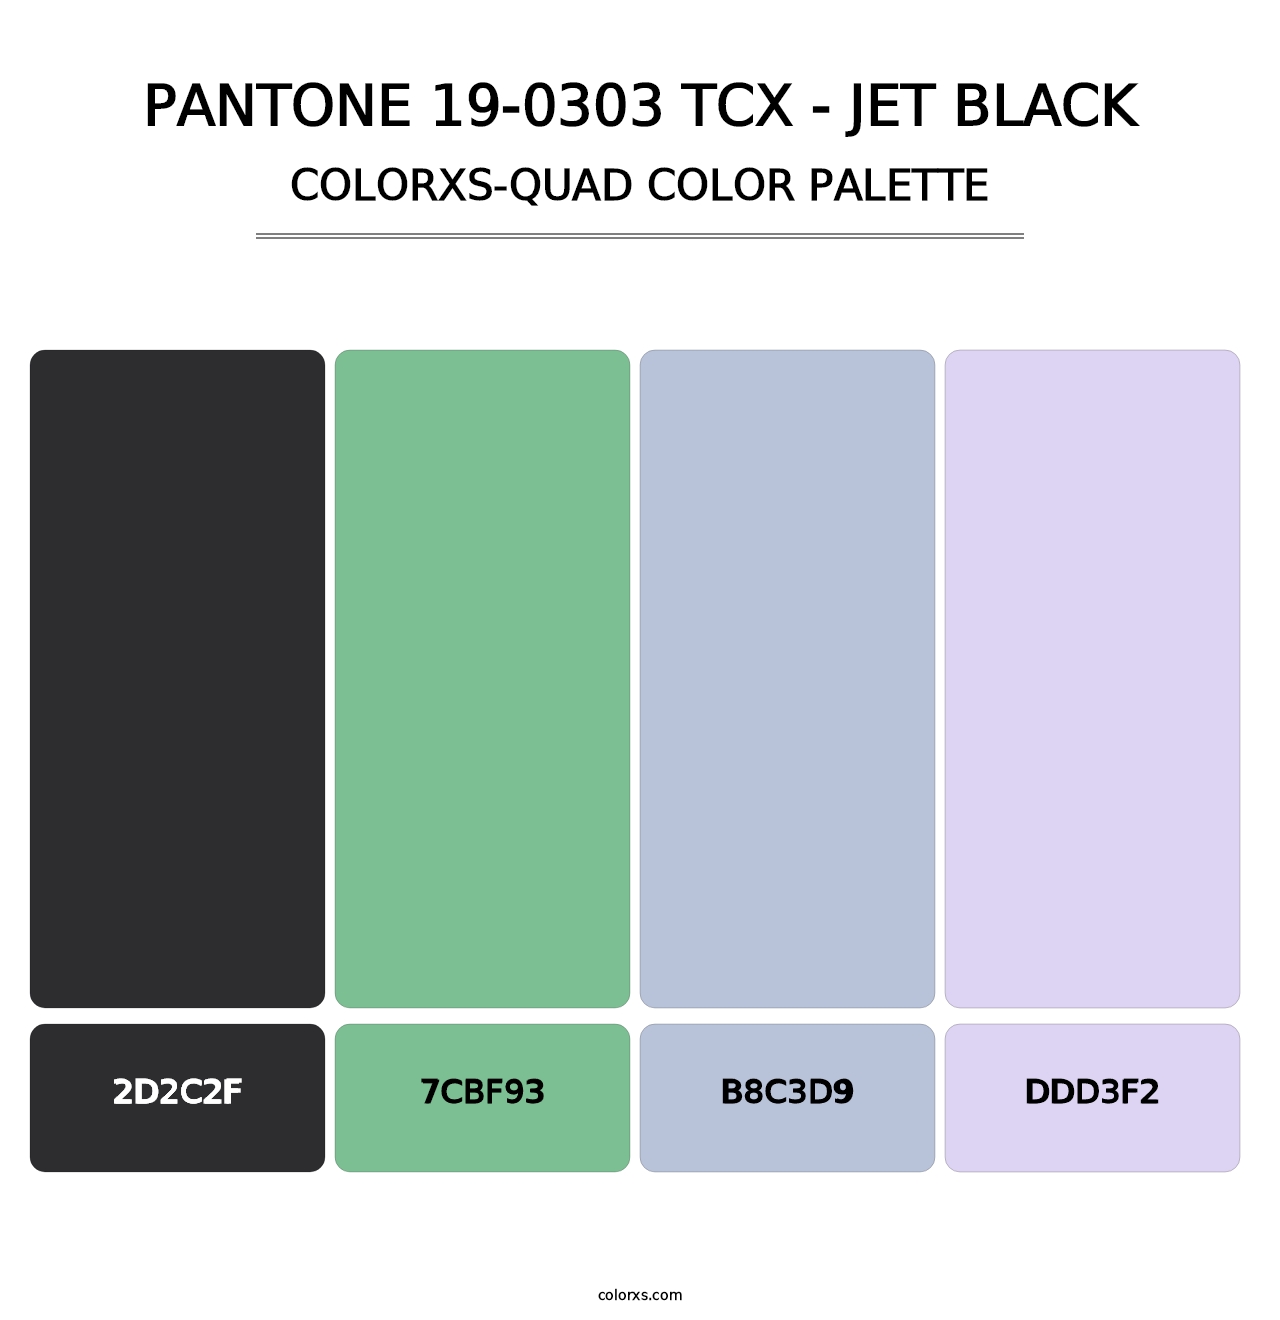 PANTONE 19-0303 TCX - Jet Black - Colorxs Quad Palette